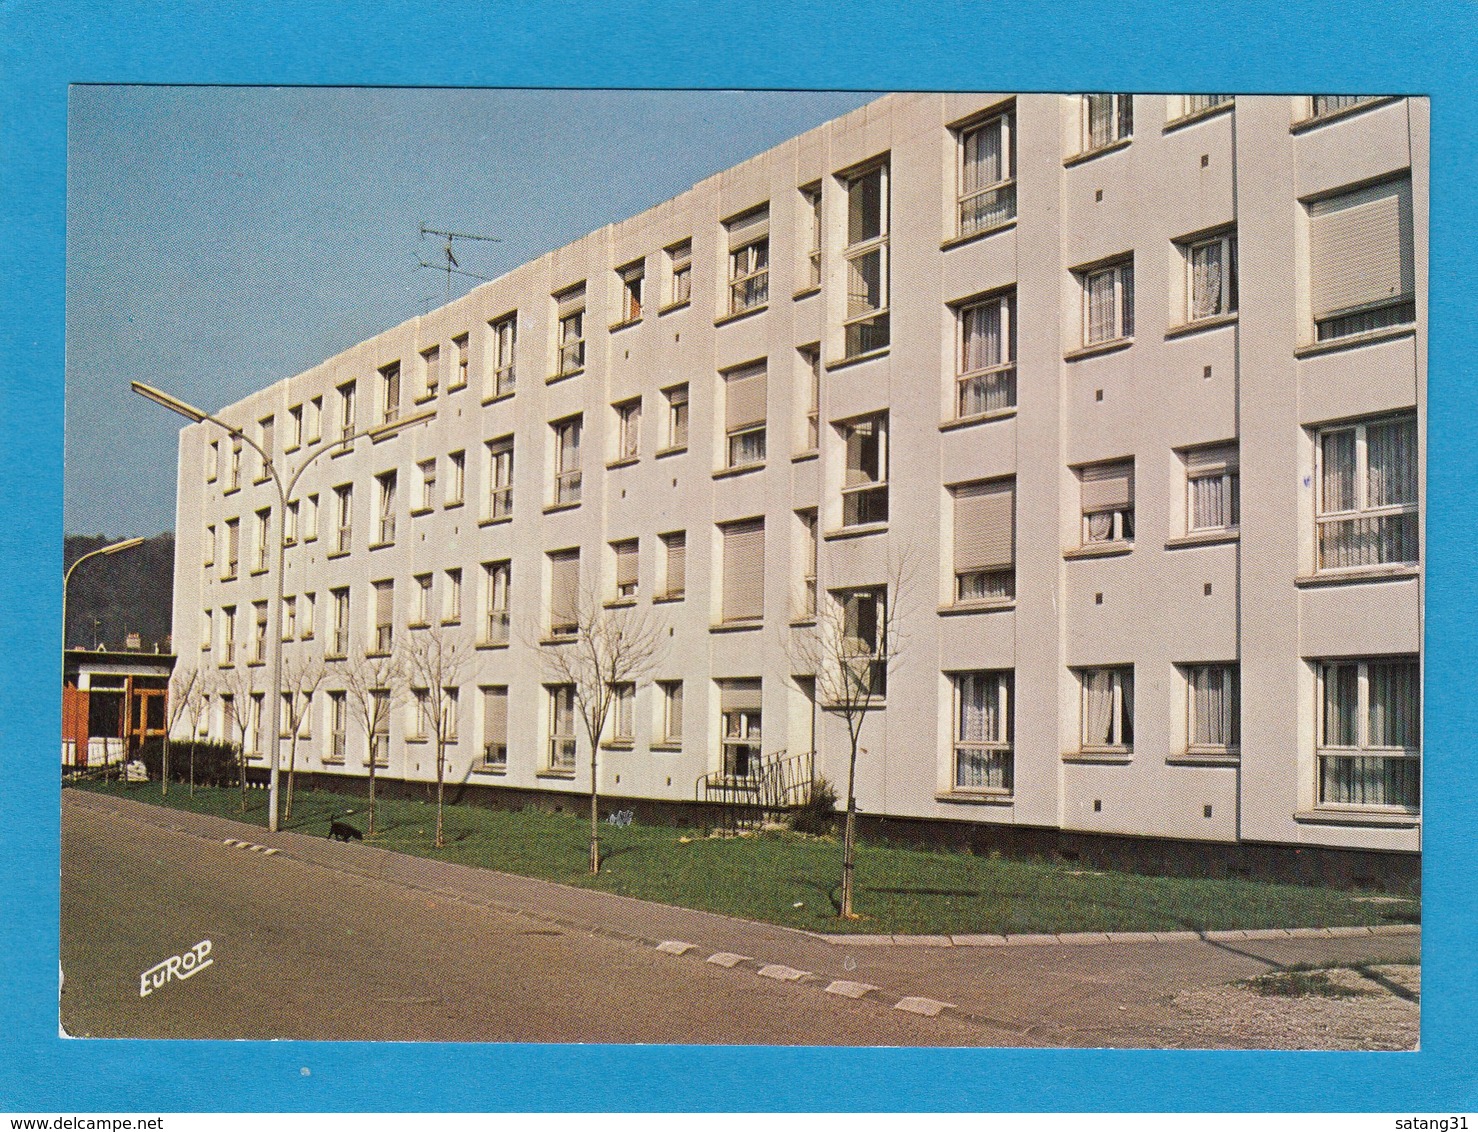 CARTE POSTALE AVEC VIGNETTE D'AFFRANCHISSEMENT DE JOEUF. - 1969 Montgeron – Papier Blanc – Frama/Satas